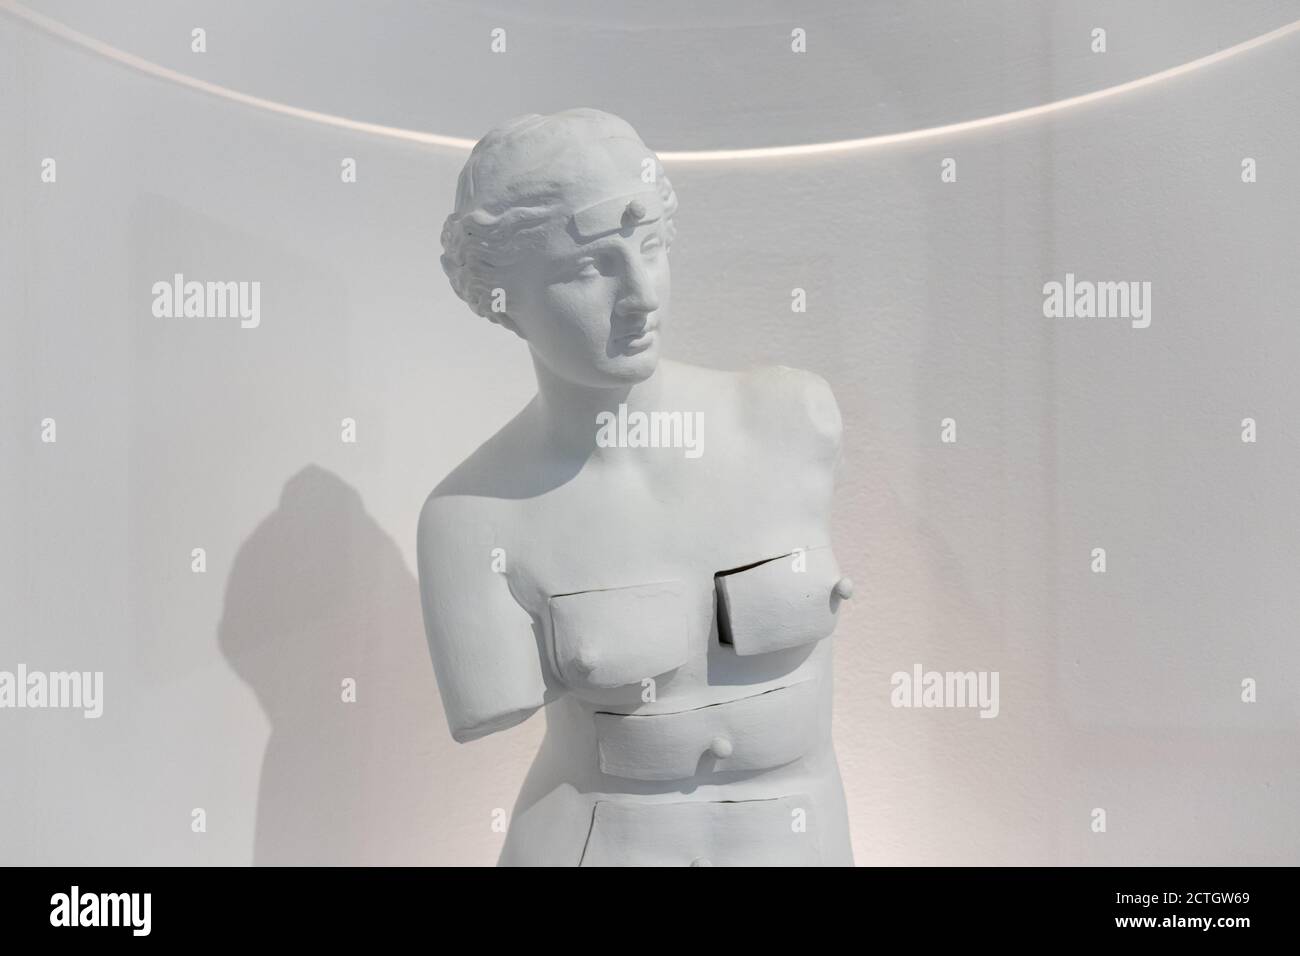 FIGUERES, SPANIEN-8. AUGUST 2020: Venus de Milo aux tiroirs (Venus de Milo mit  Schubladen) Statue von Salvador Dali im Dali Theater und Museum in seinem h  Stockfotografie - Alamy